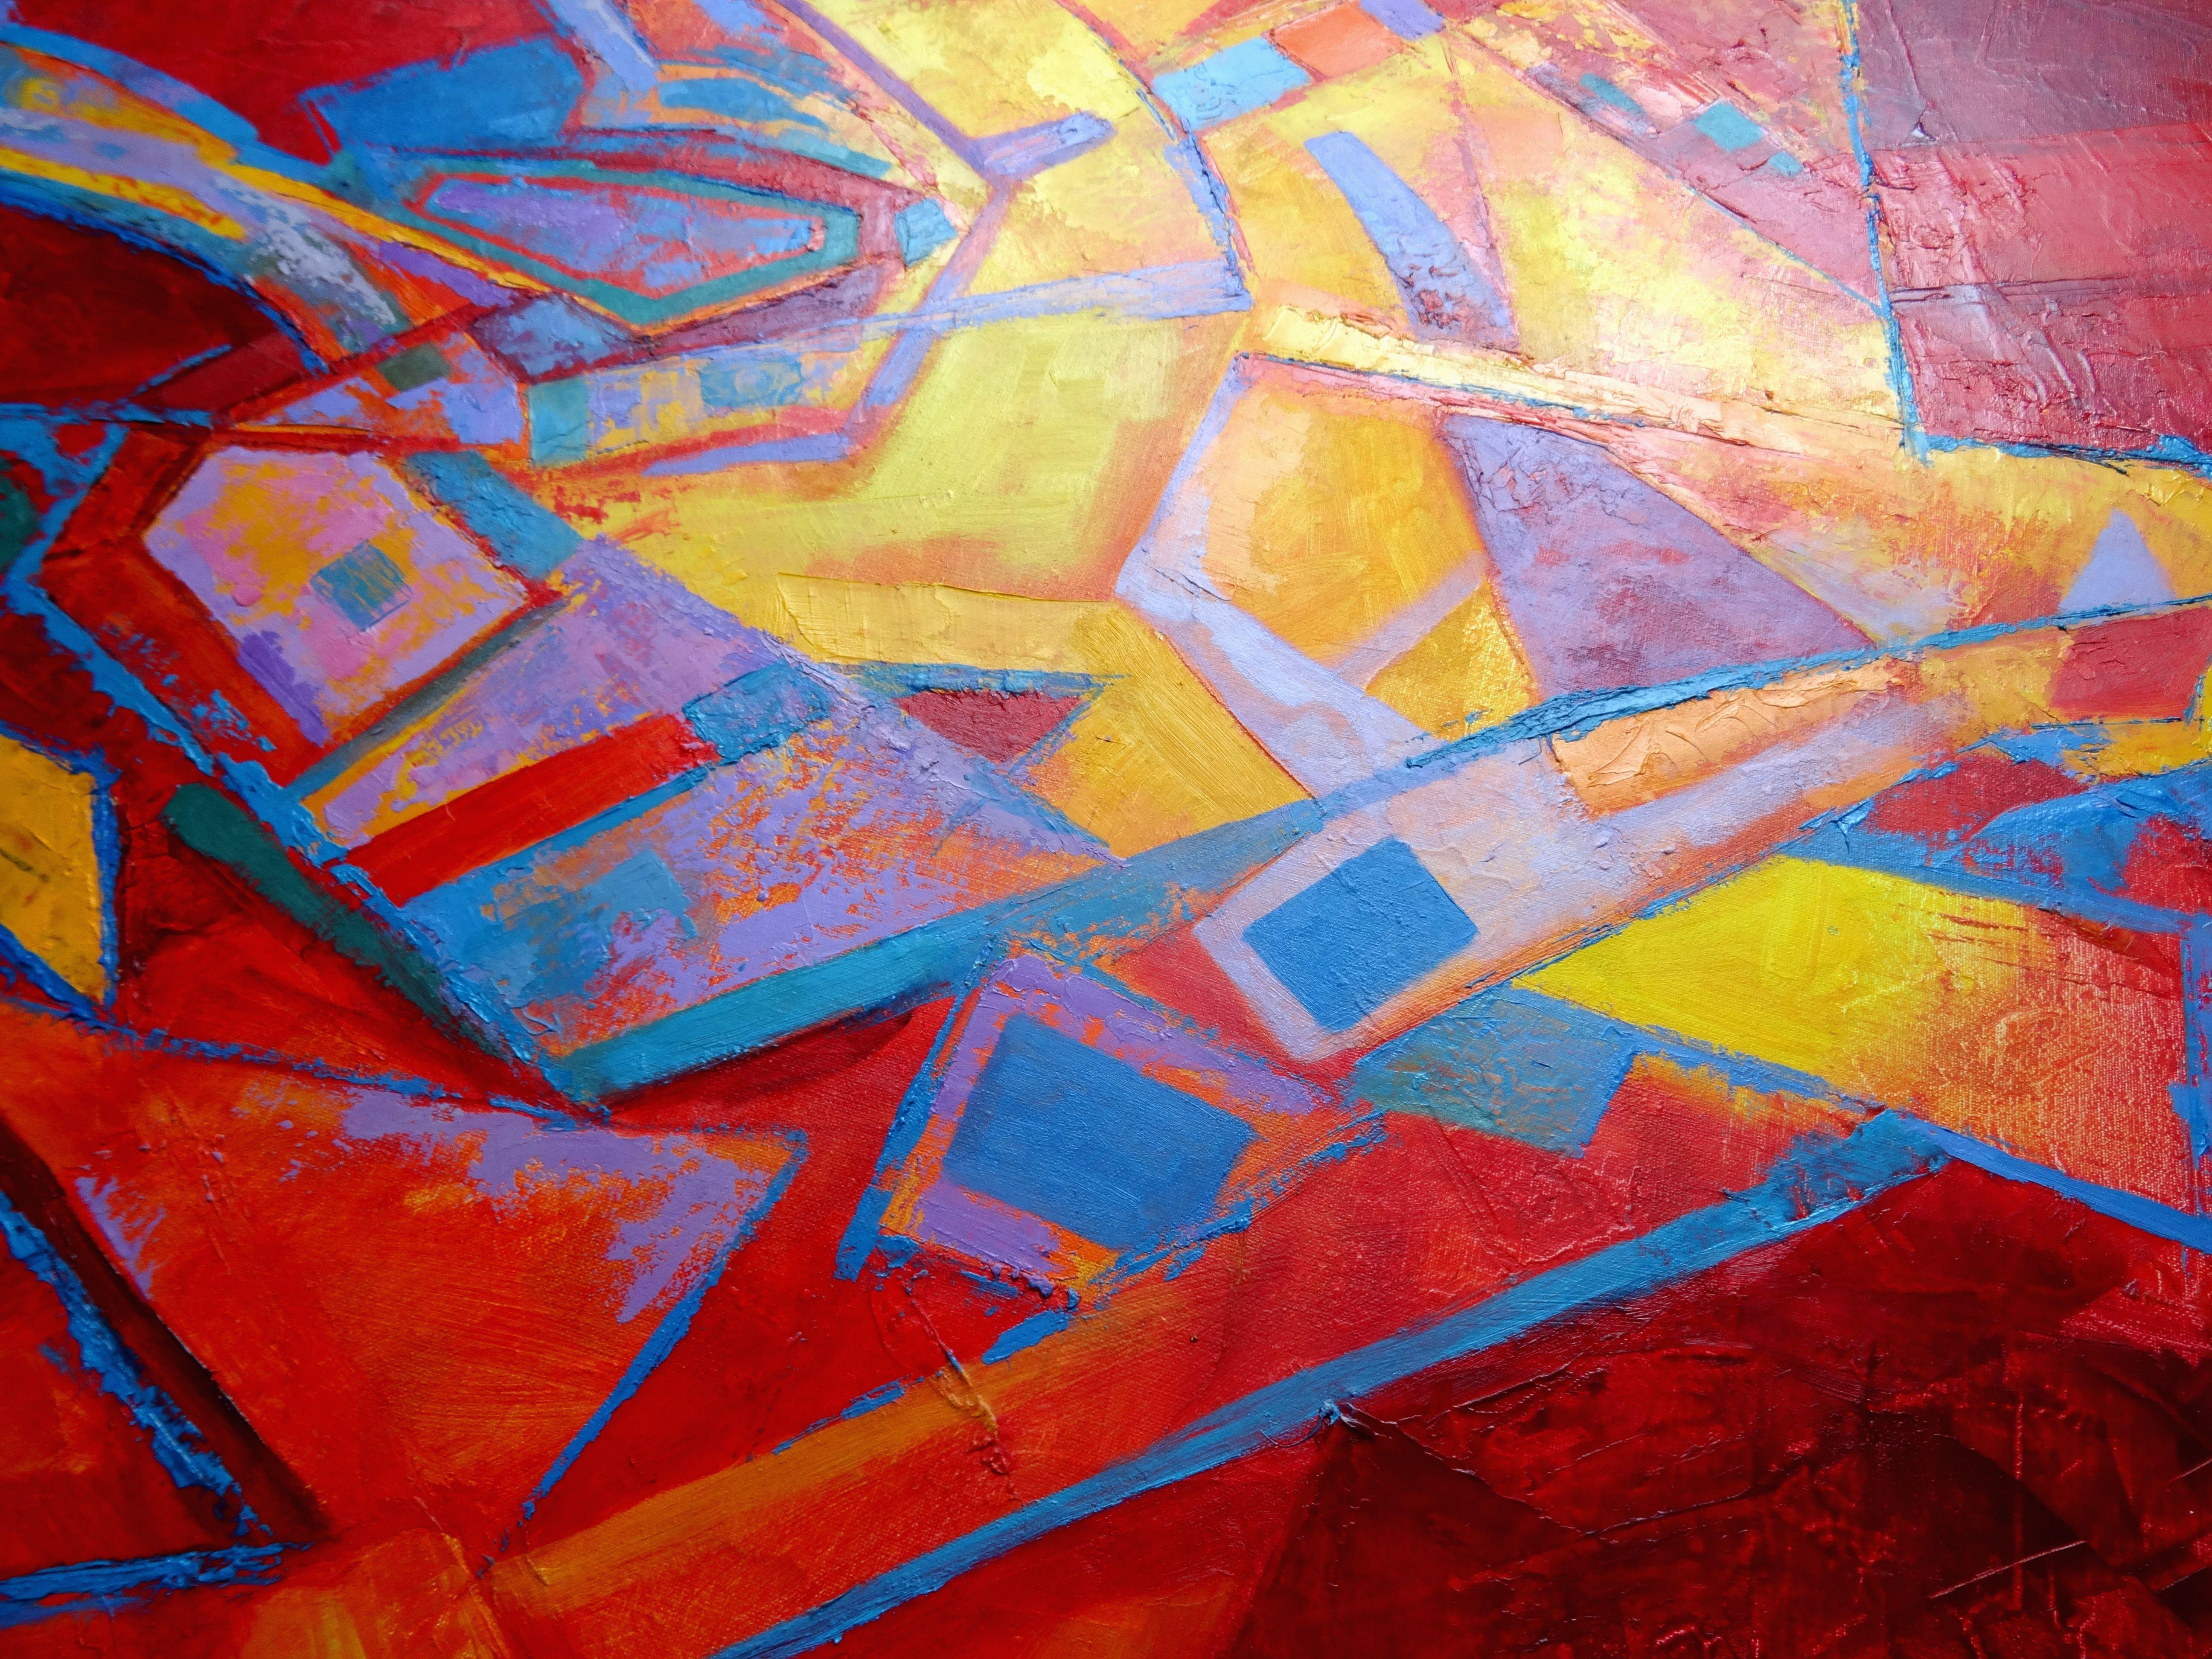 Roter Tango. Abstraktes Gemälde in Großformat in Rot, 2018, Öl auf Leinwand, 100x120 cm (Geometrische Abstraktion), Painting, von Igor Leontiev